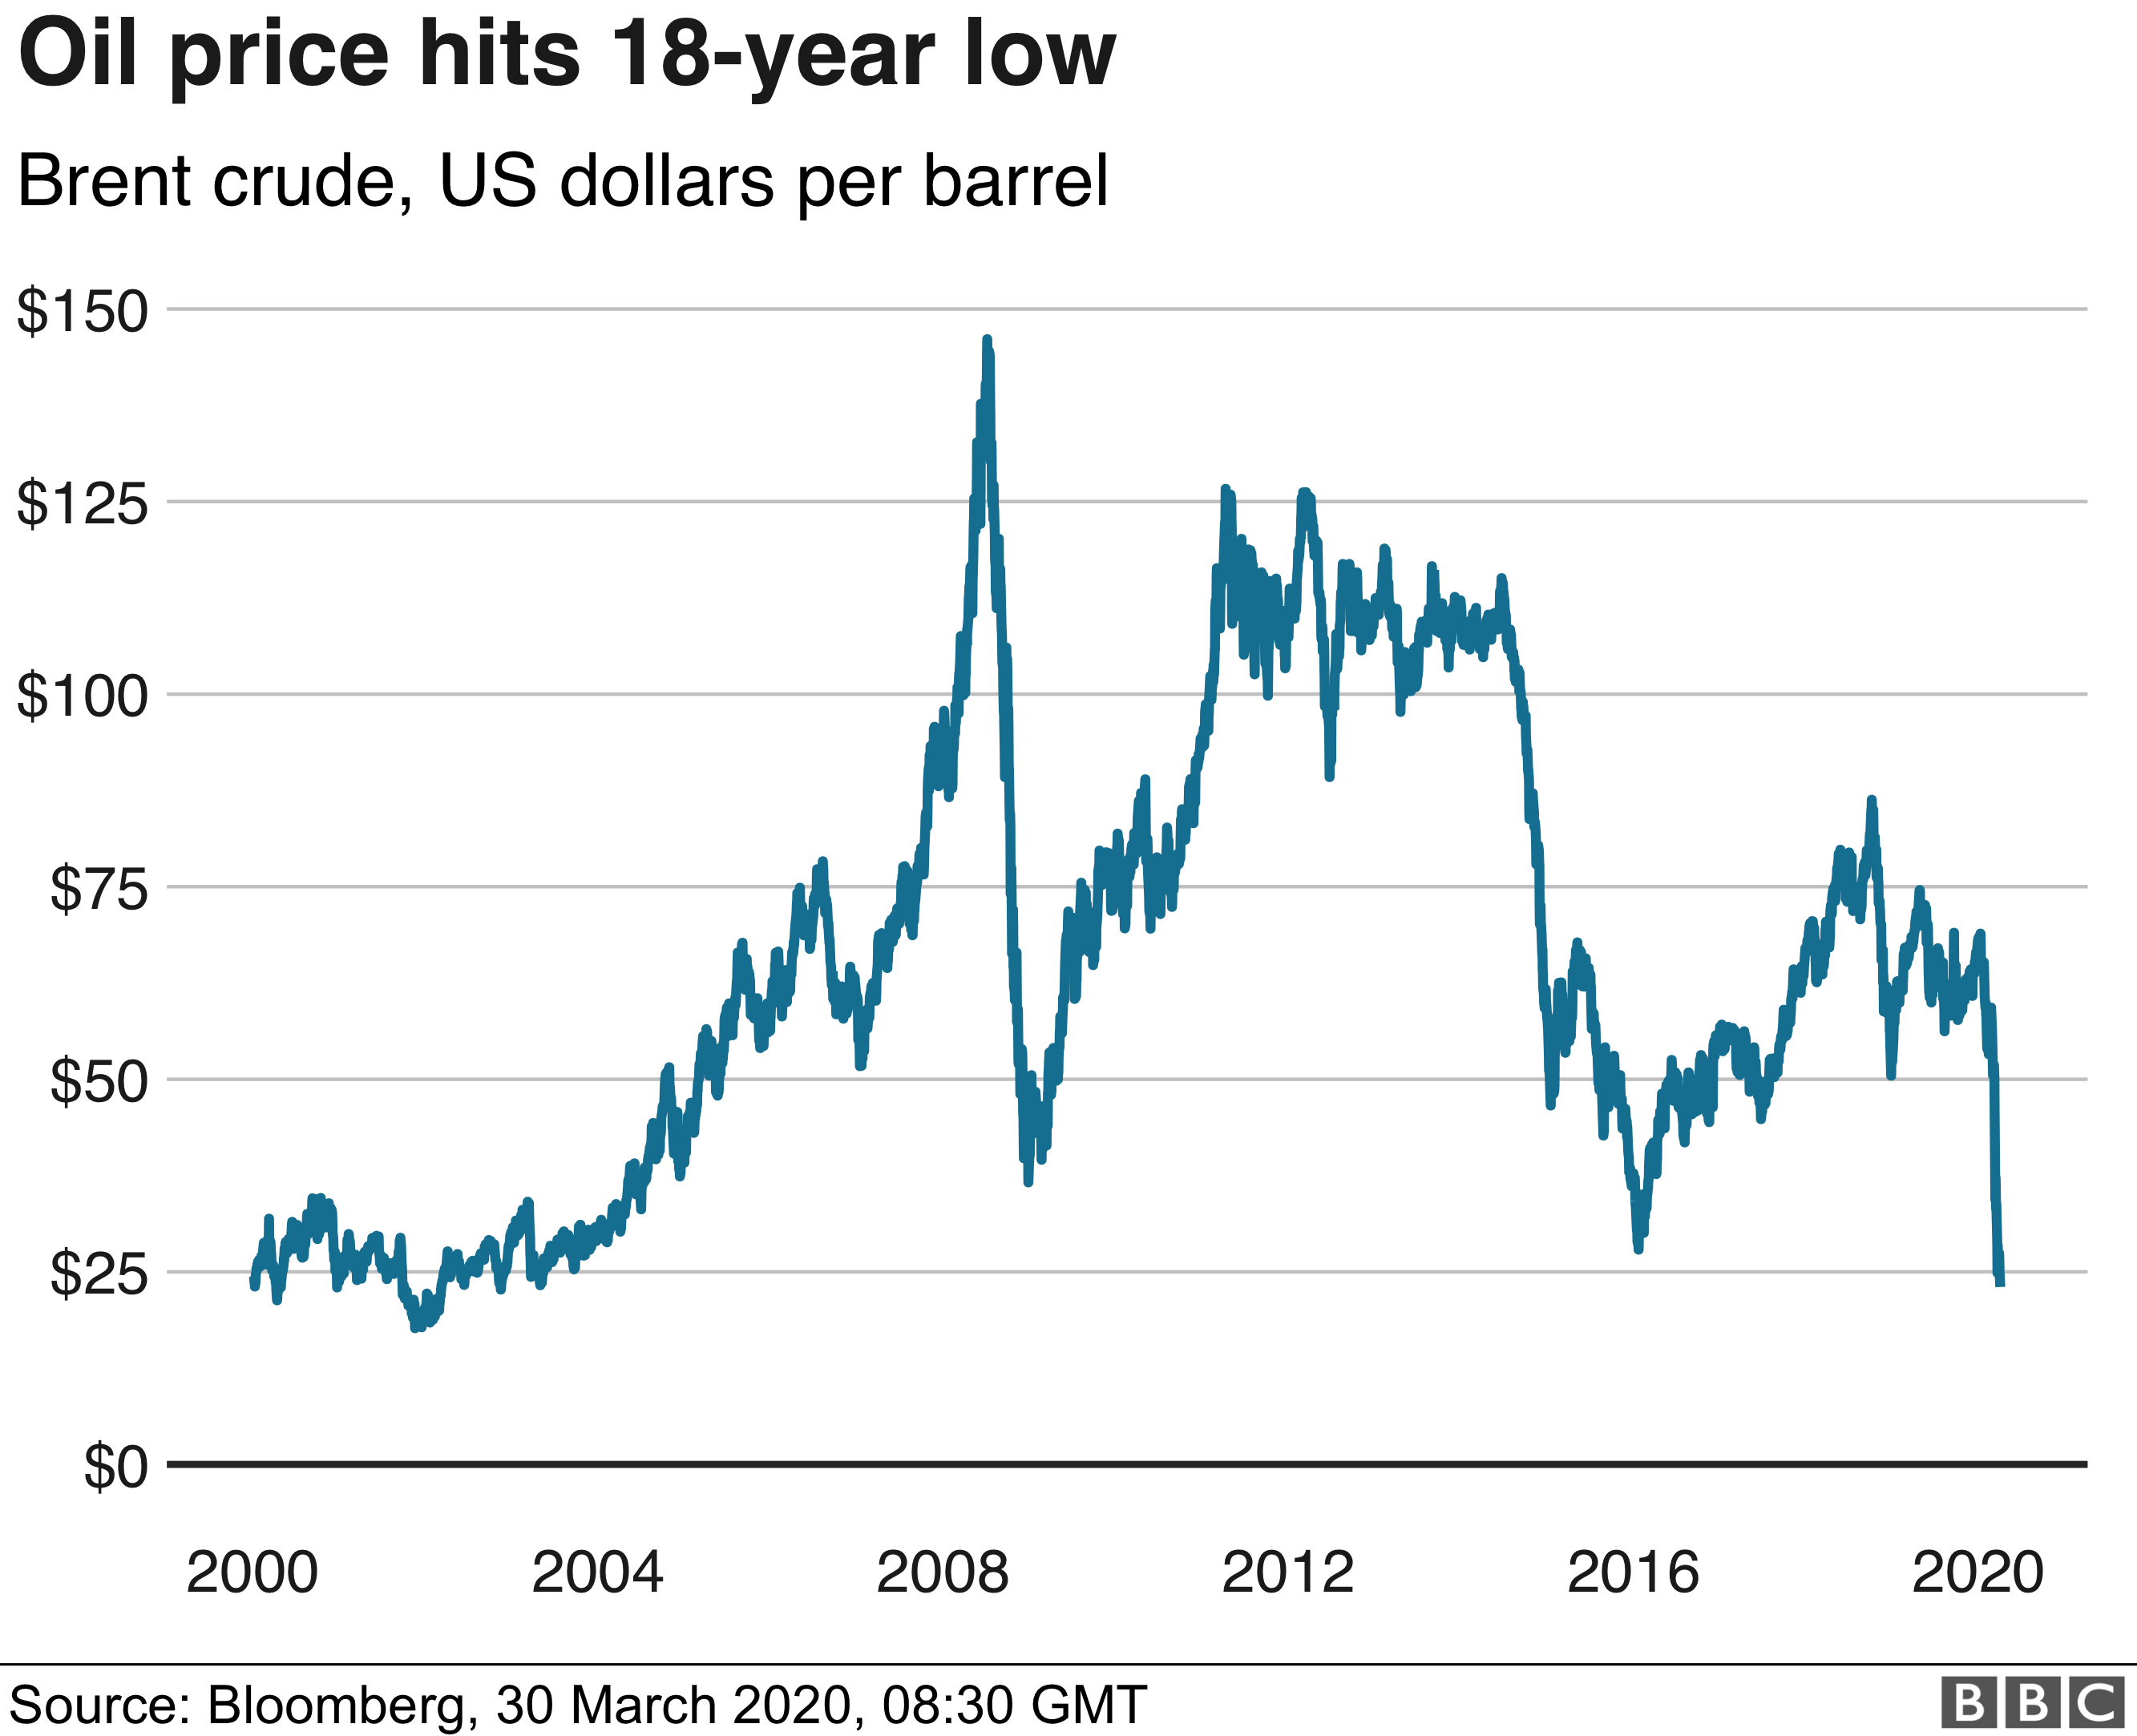 Oil price drops below 18 per barrel in the U.S.